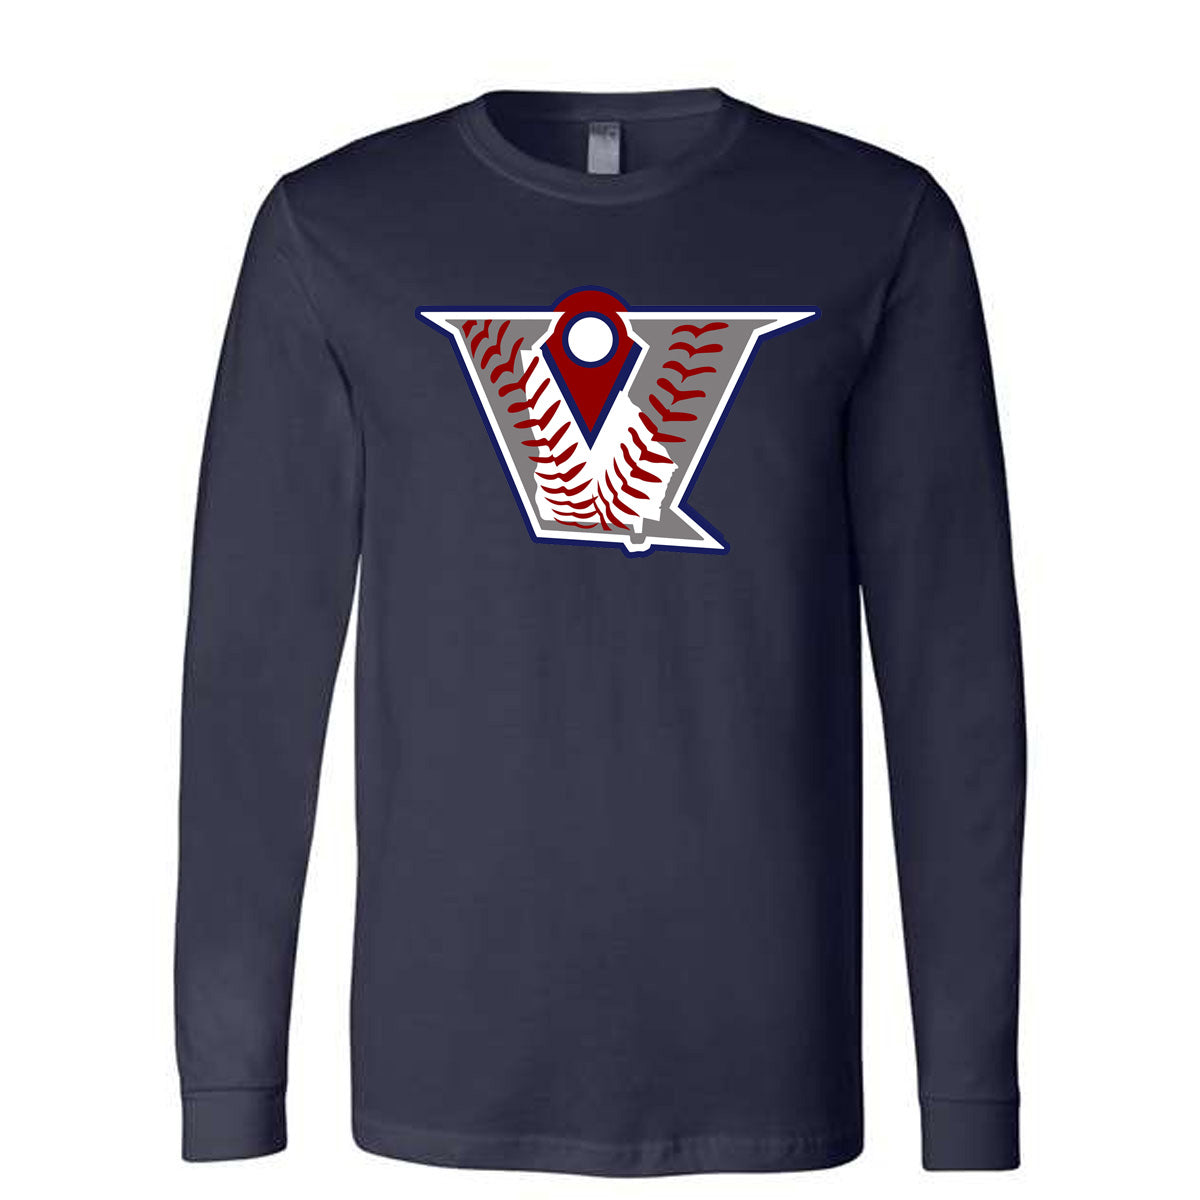 Velo BB - Velocity Baseball Logo - Navy Tee - Southern Grace Creations